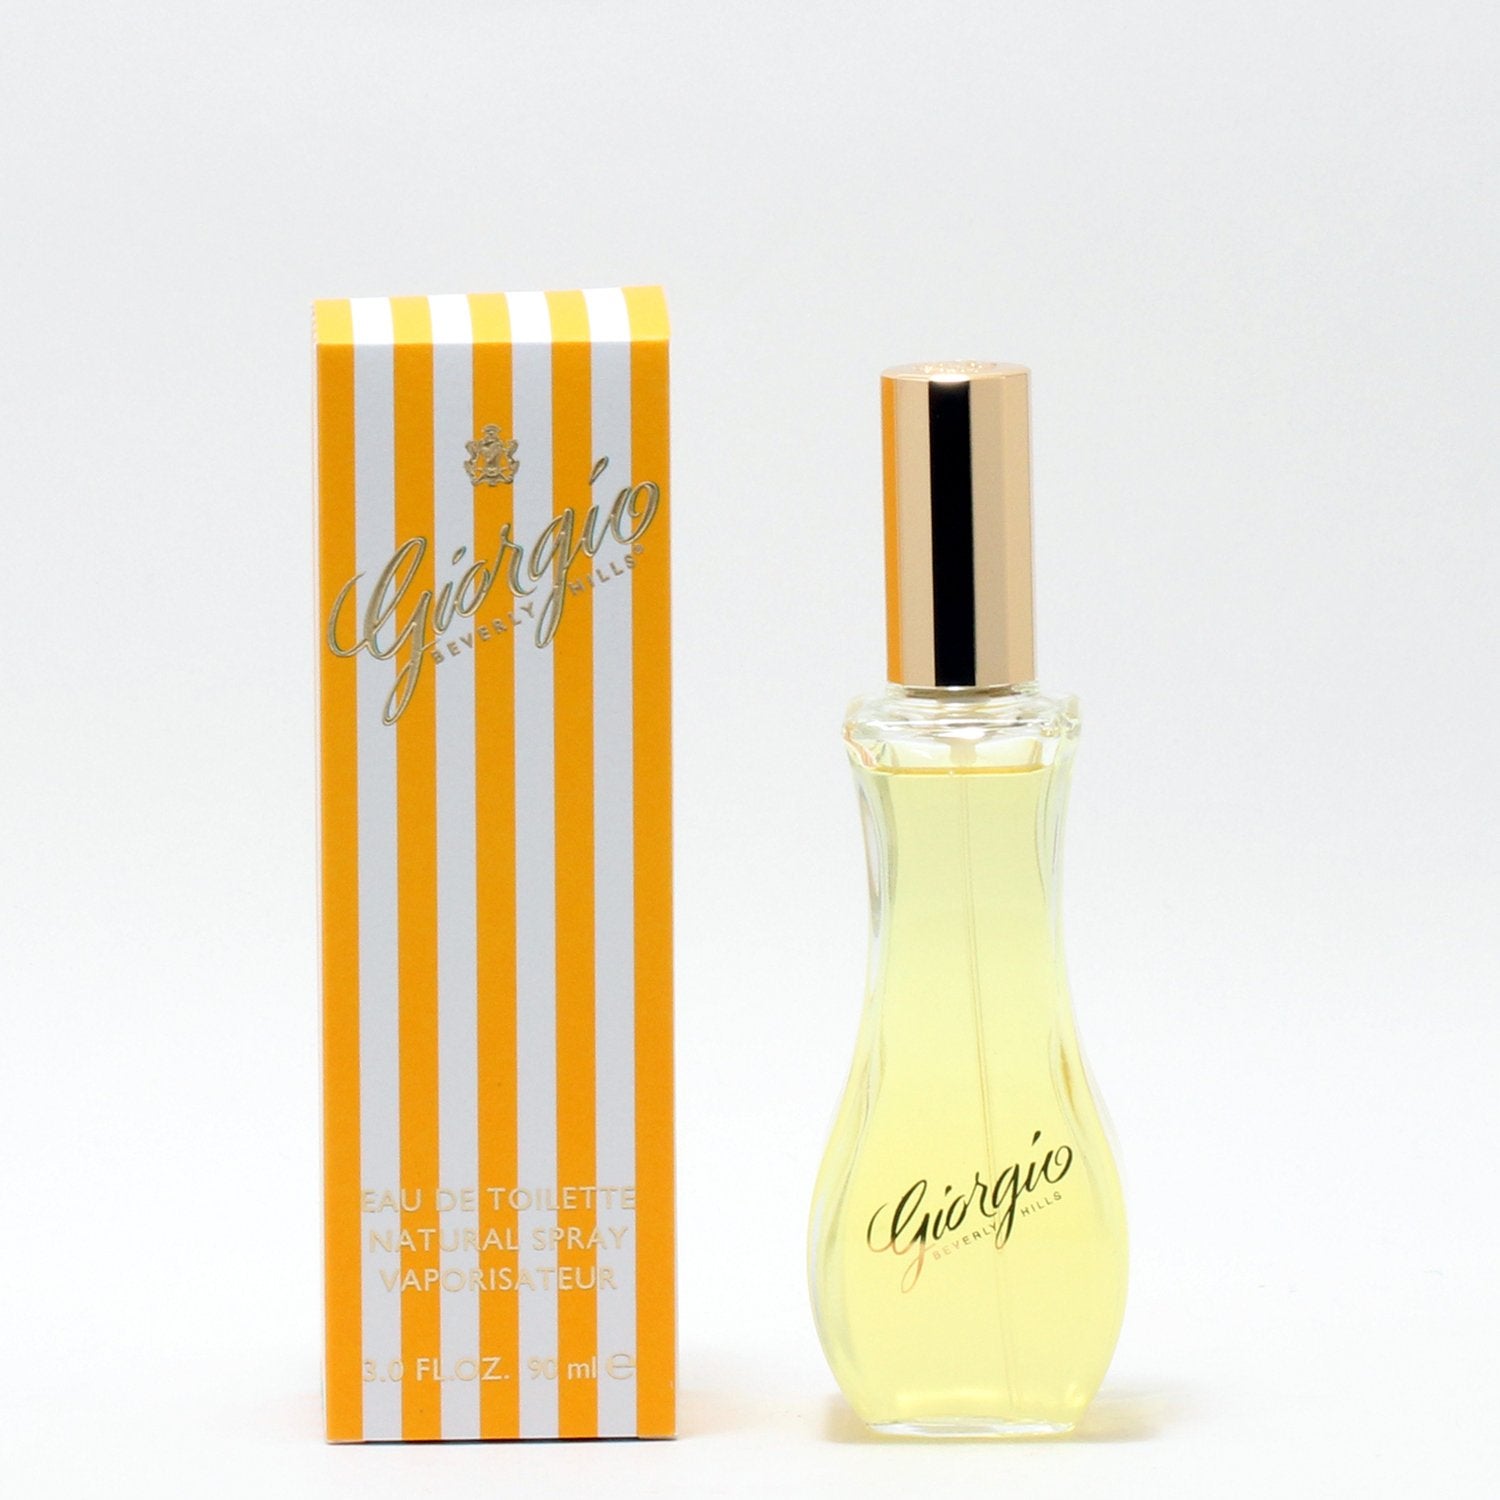 Perfume - GIORGIO FOR WOMEN BY GIORGIO BEVERLY HILLS - EAU DE TOILETTE SPRAY, 3.0 OZ